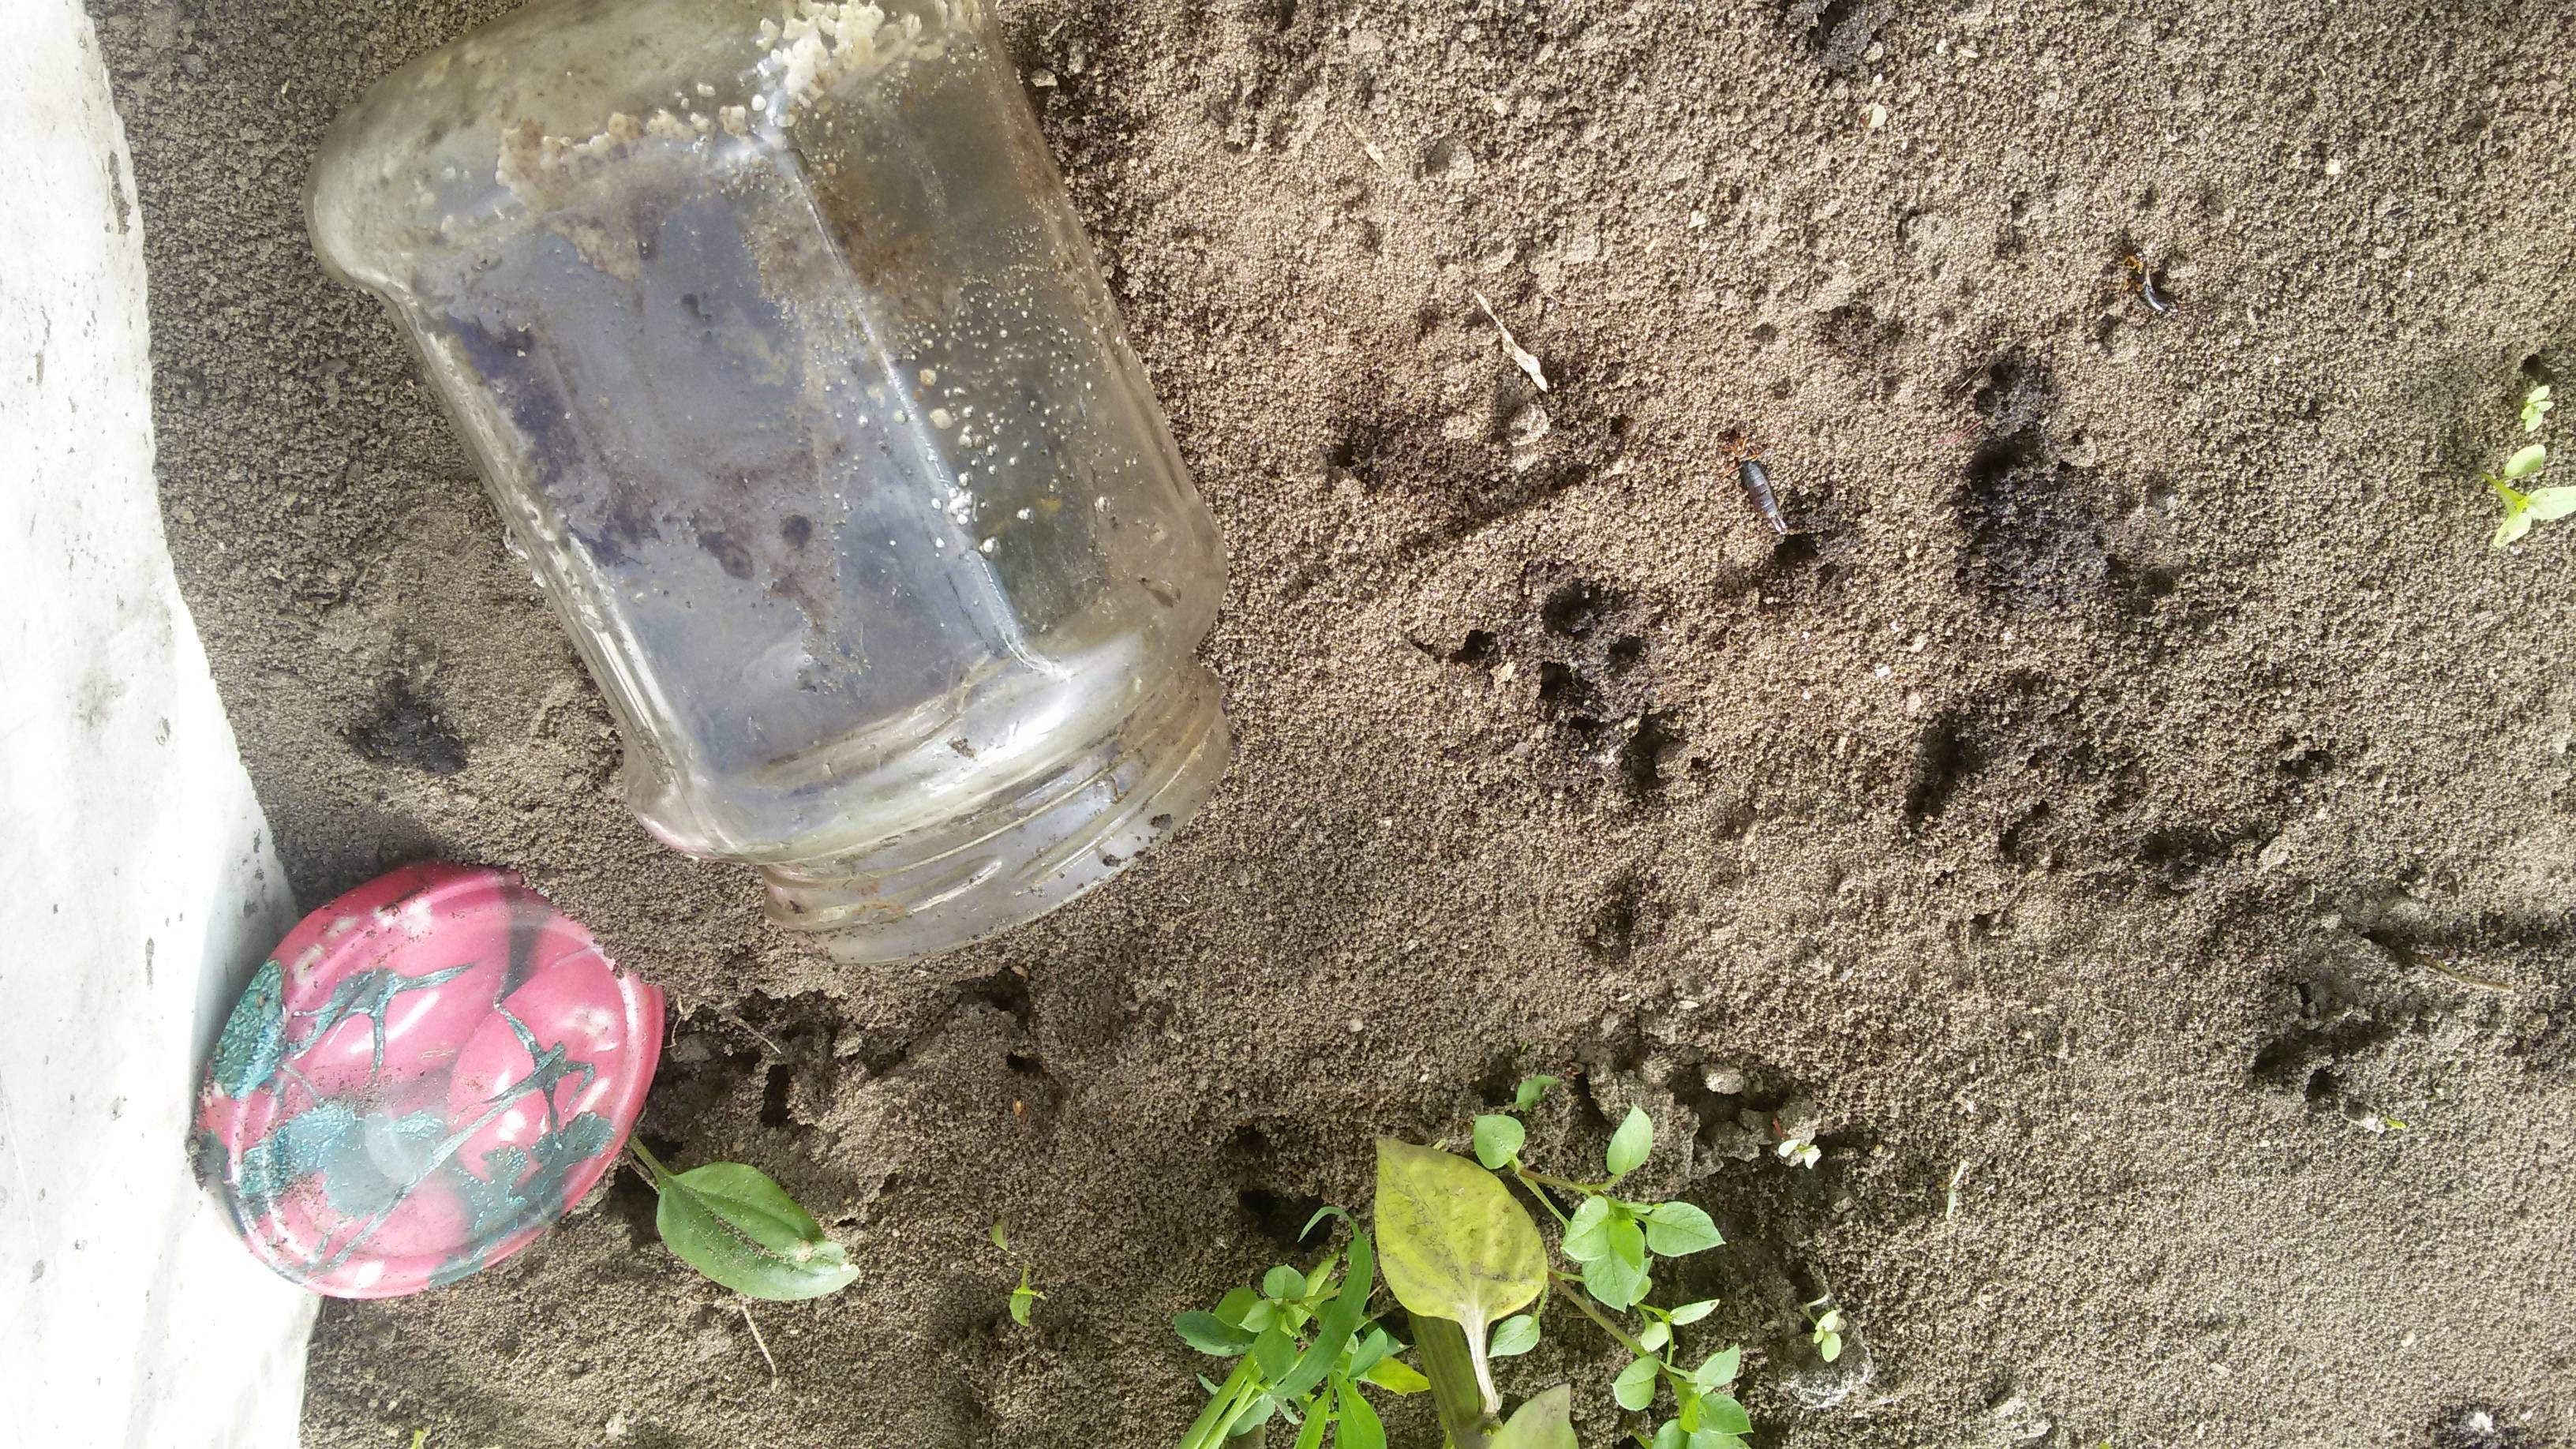 Как избавиться от муравьев в теплице с огурцами: что делать и как защитить рассаду